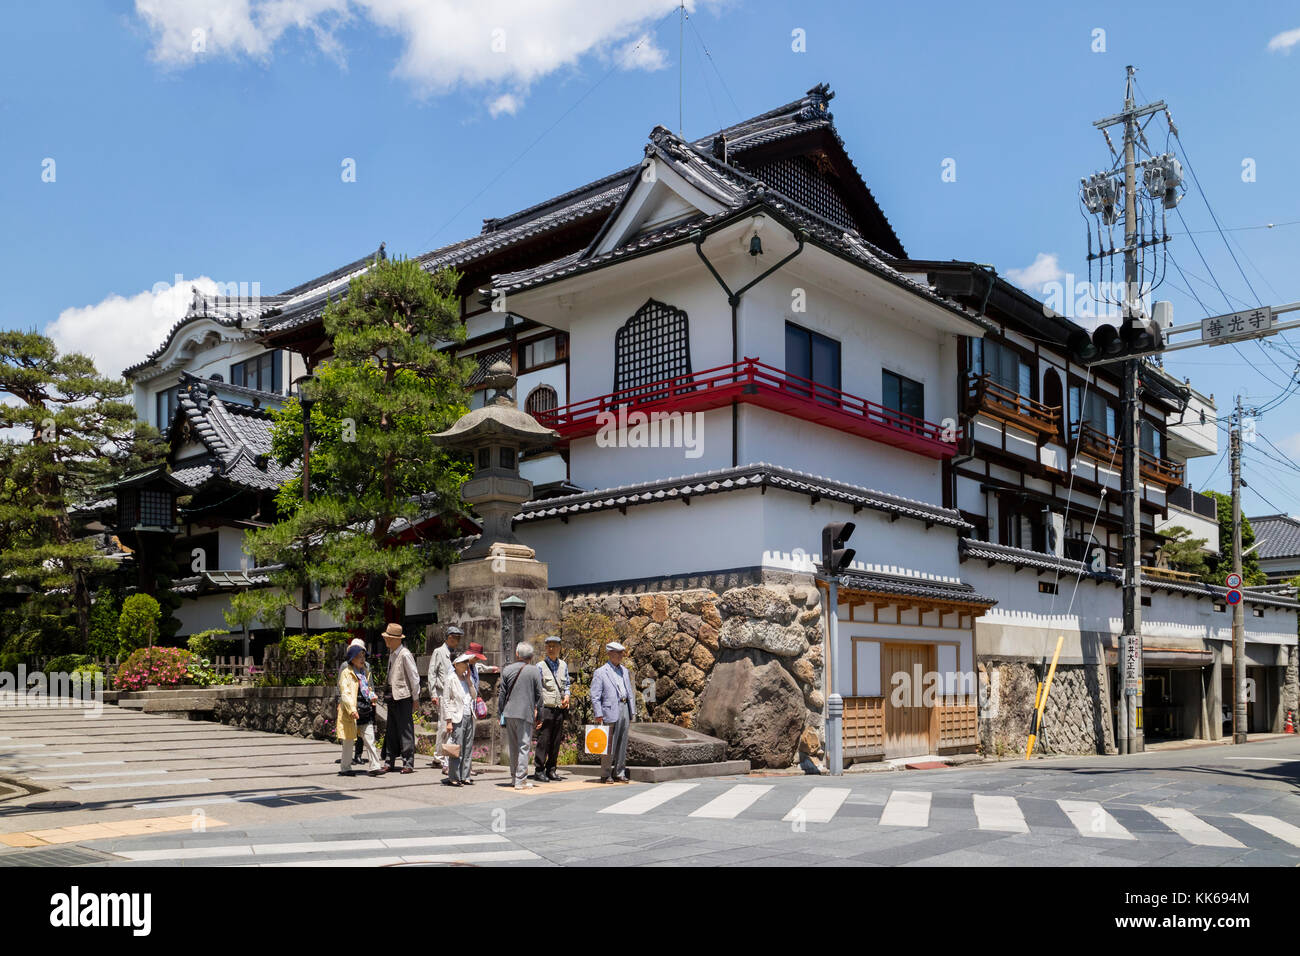 Nagano, Japon - 5 juin 2017 : Street corner à Nagano avec des maisons traditionnelles et les touristes japonais Banque D'Images